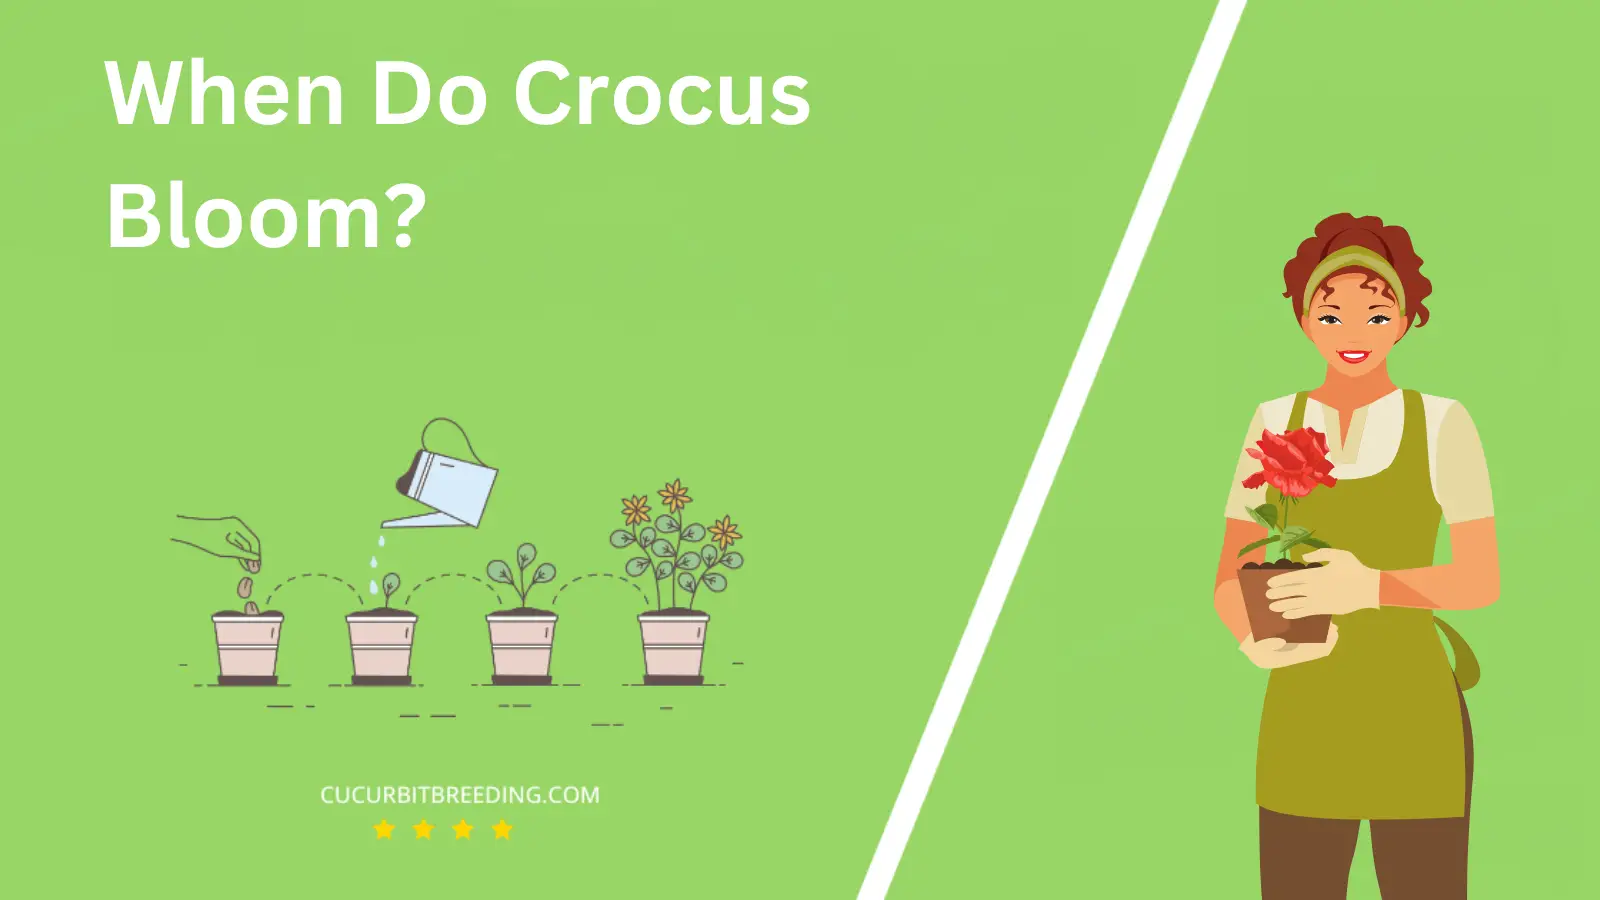 When Do Crocus Bloom?